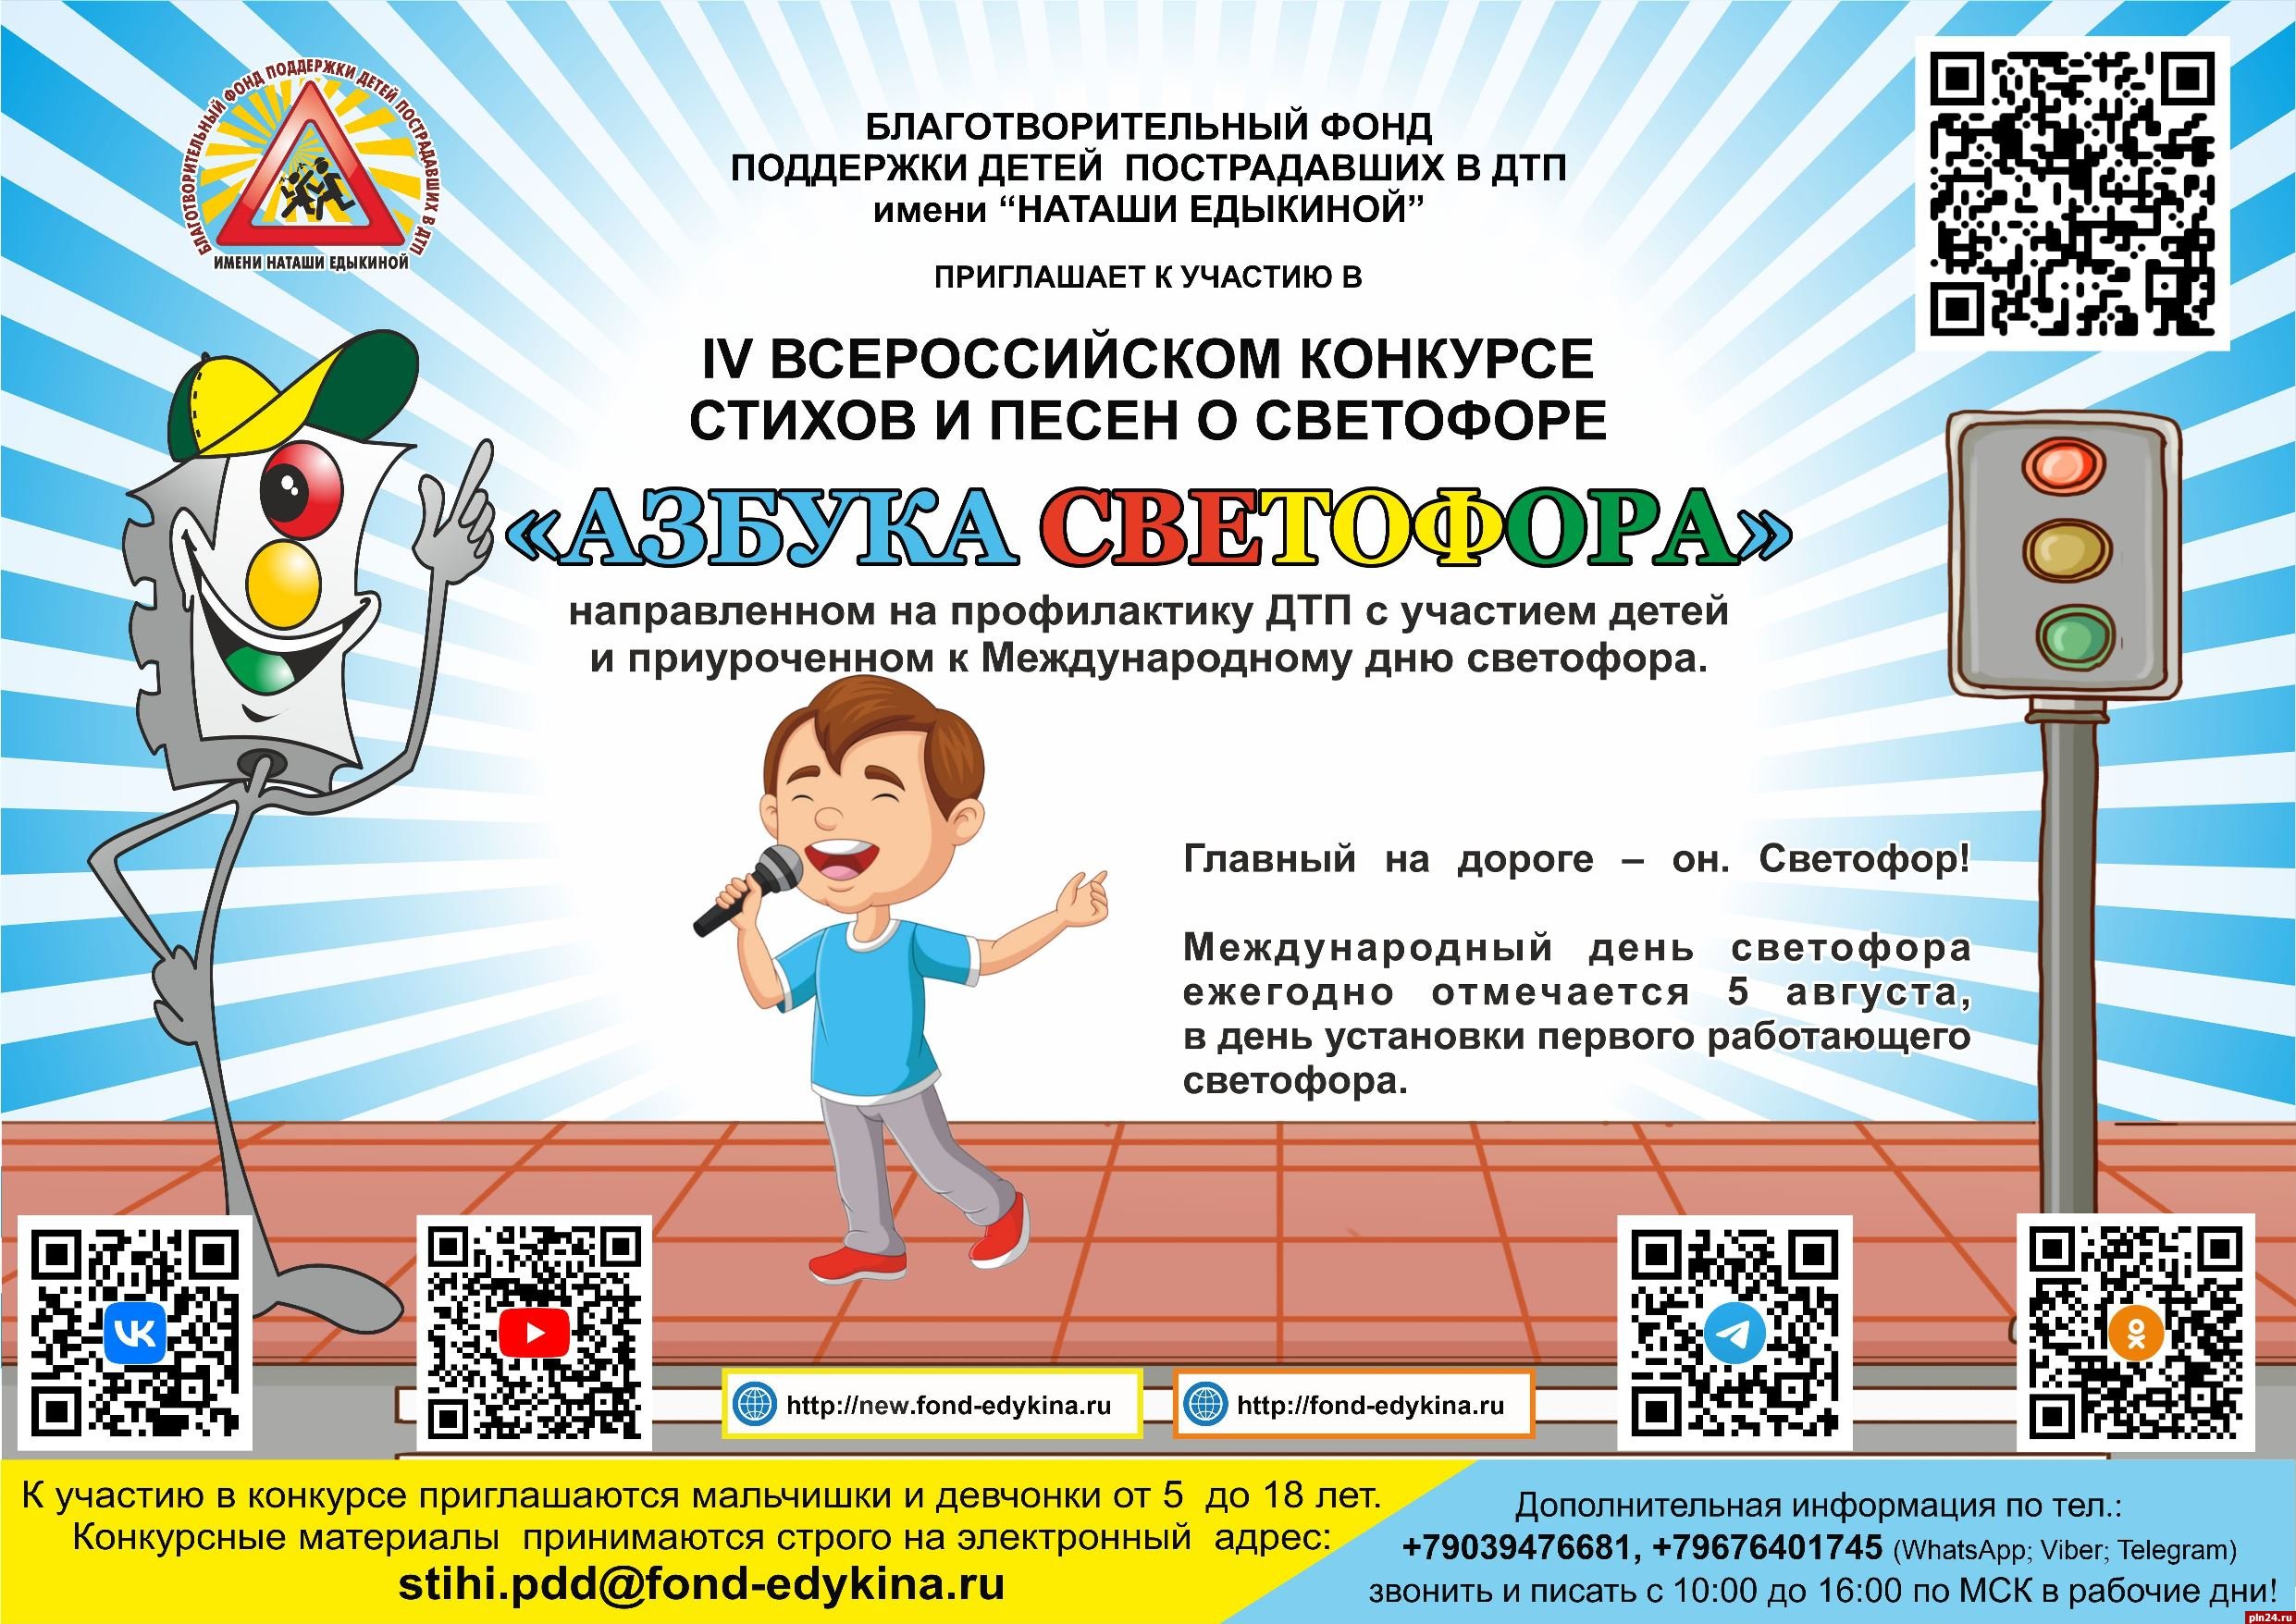 Юные псковичи могут принять участие во всероссийском конкурсе стихов и песен о светофоре